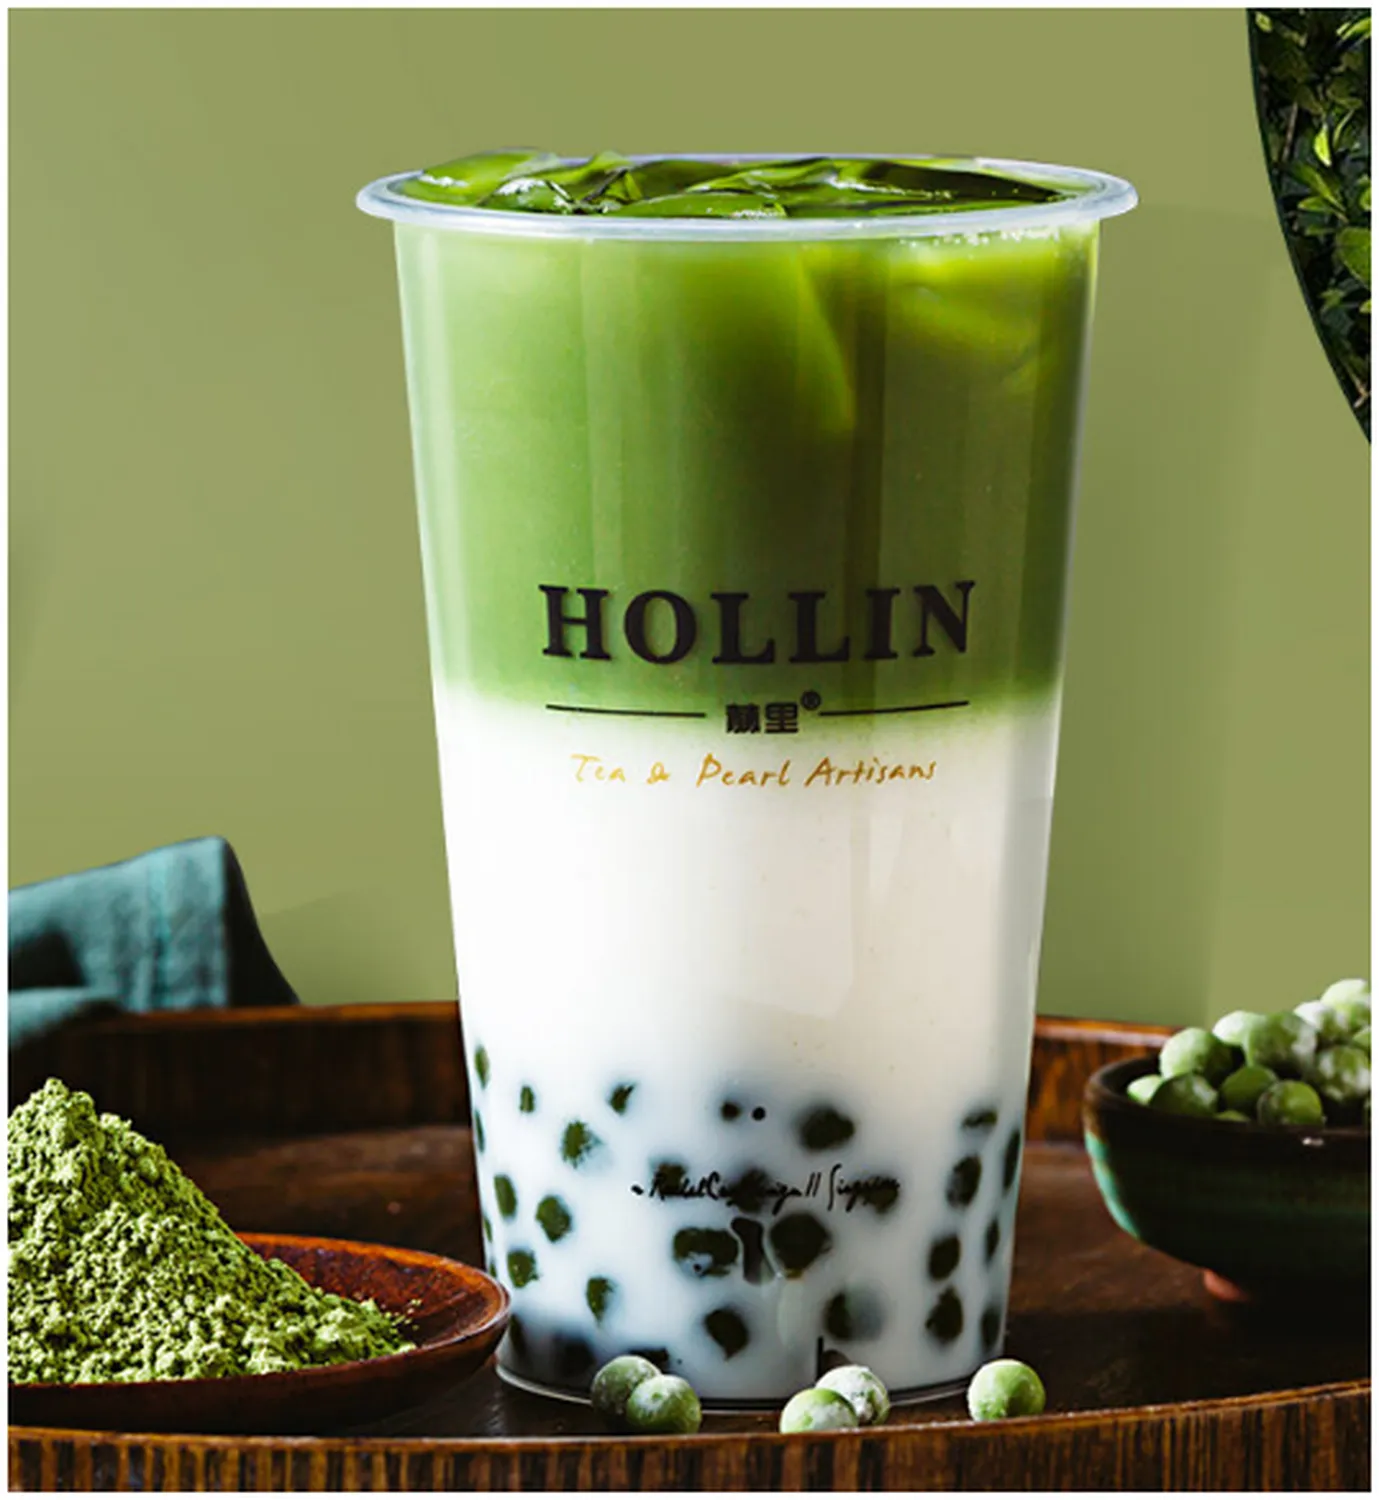 hollin menu singapore tea latte